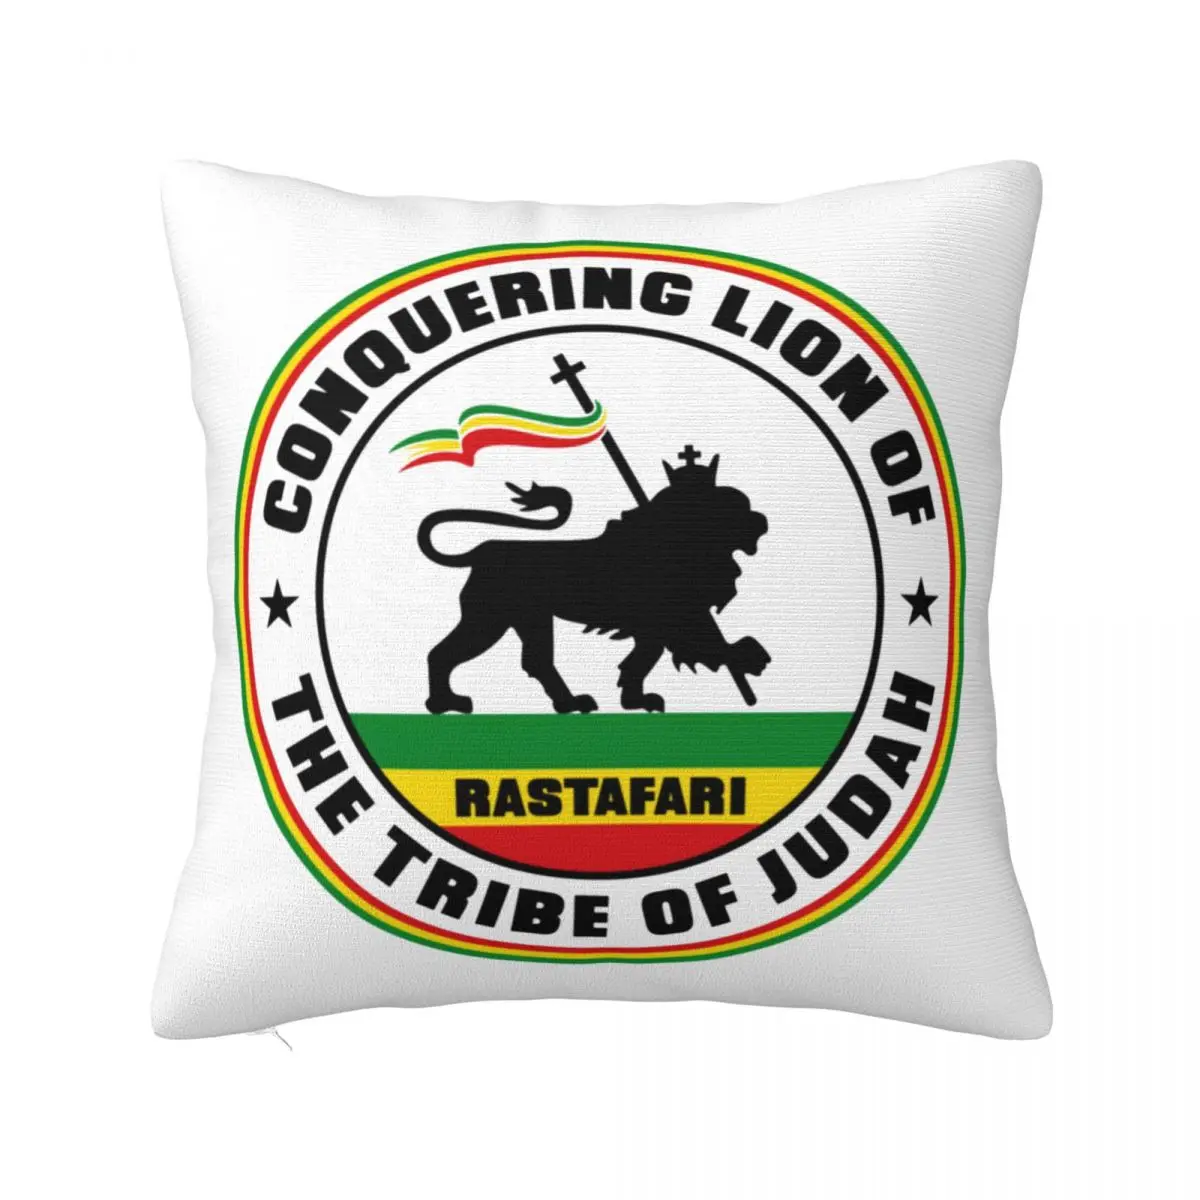 

Наволочки Rastafari Rasta Lion Of juah, наволочки с рисунком товара, наволочки в подарок, подушки с ярким флагом из Японии, разные размеры